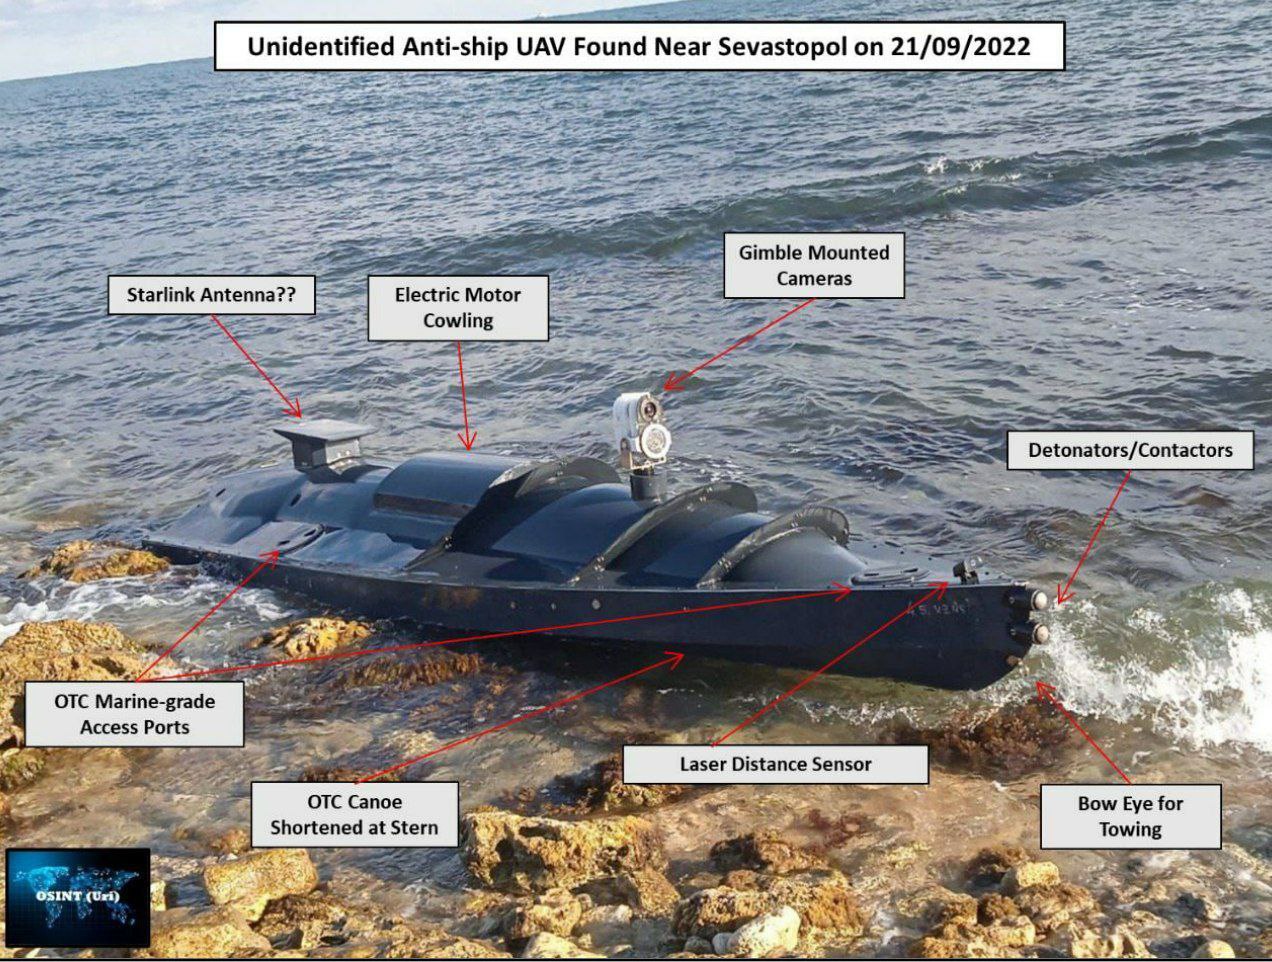 "Это фантастика". Атака в Севастополе меняет ВМС: могут ли дроны вытеснить боевые корабли